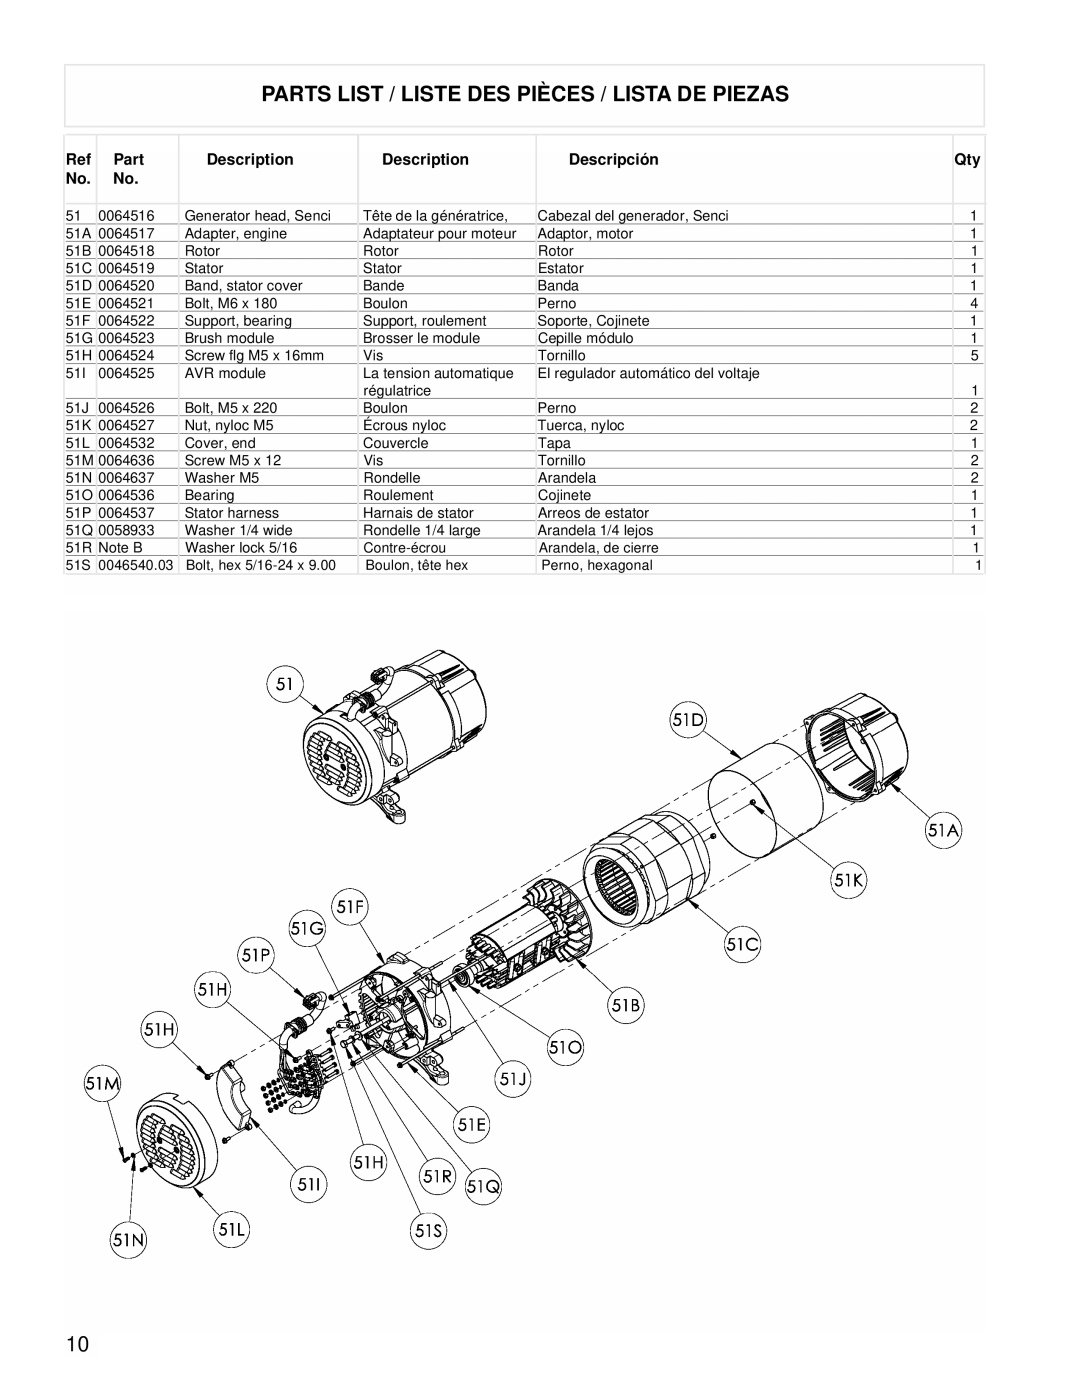 Powermate PM0525312.03 manual Parts List / Liste Des Pièces / Lista De Piezas, 0064516 